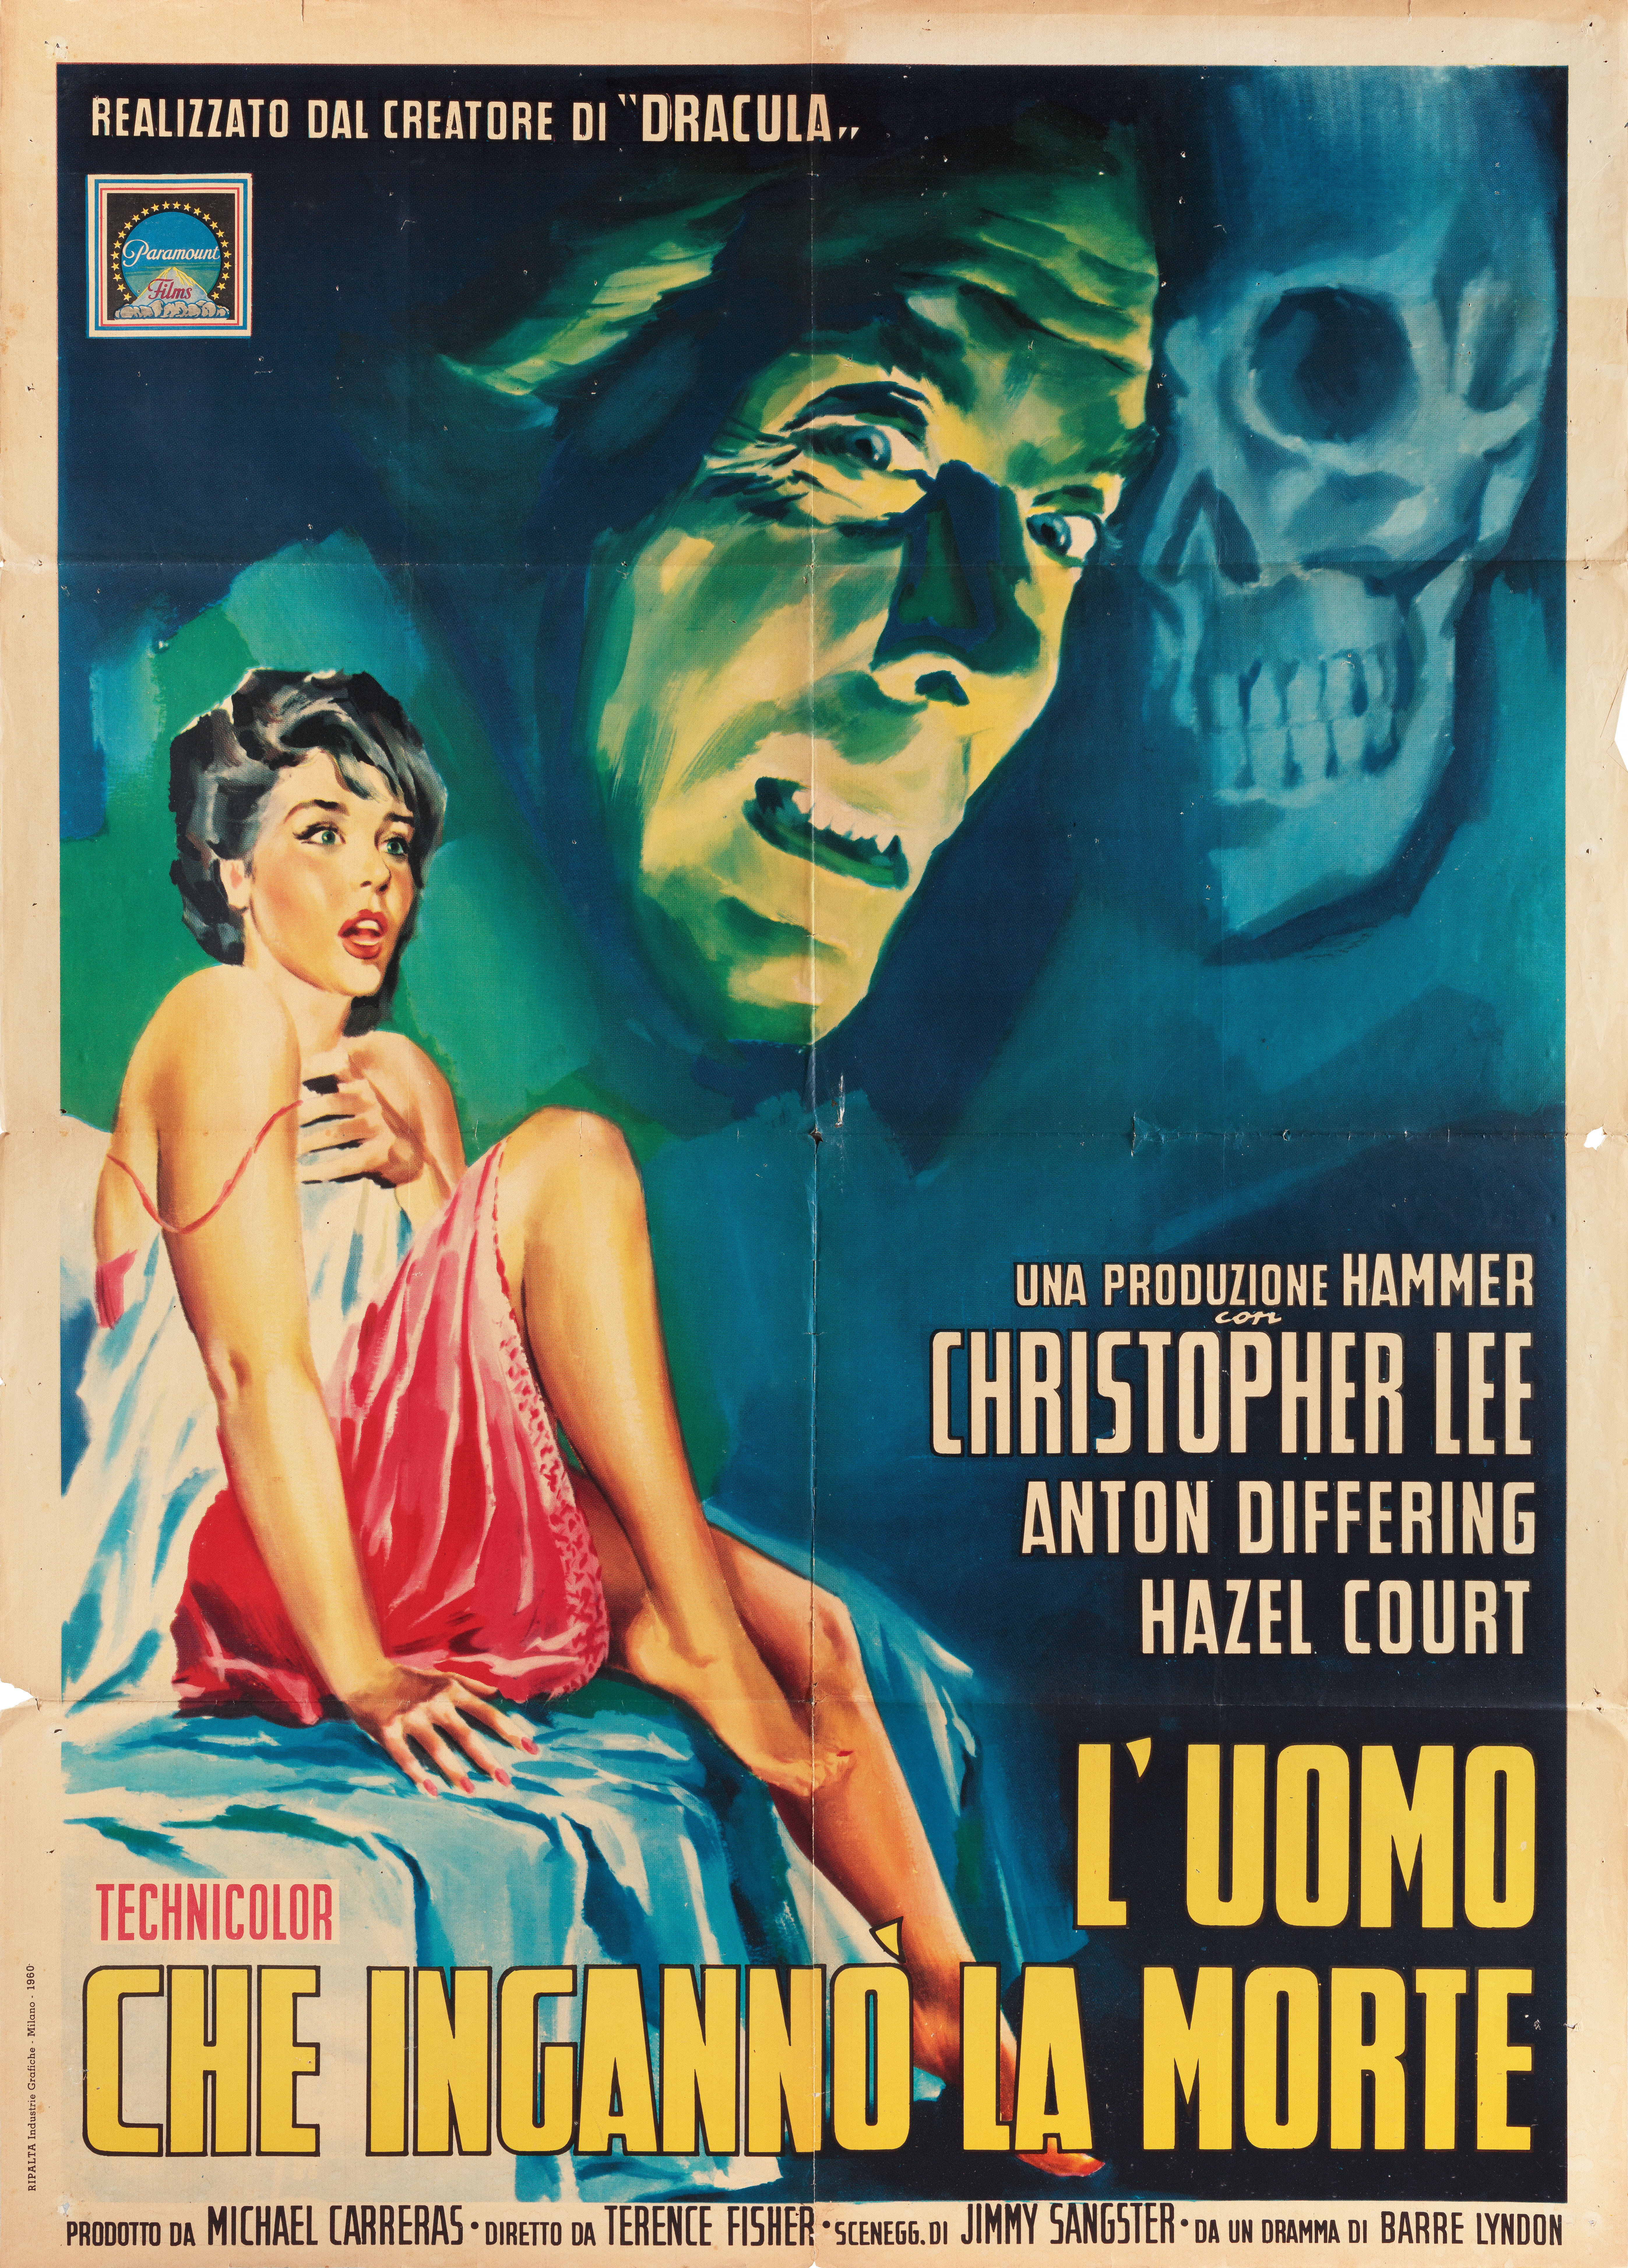 Человек, обманувший смерть (The Man Who Could Cheat Death, 1959), режиссёр Теренс Фишер, итальянский постер к фильму (Hummer horror, 1959 год)